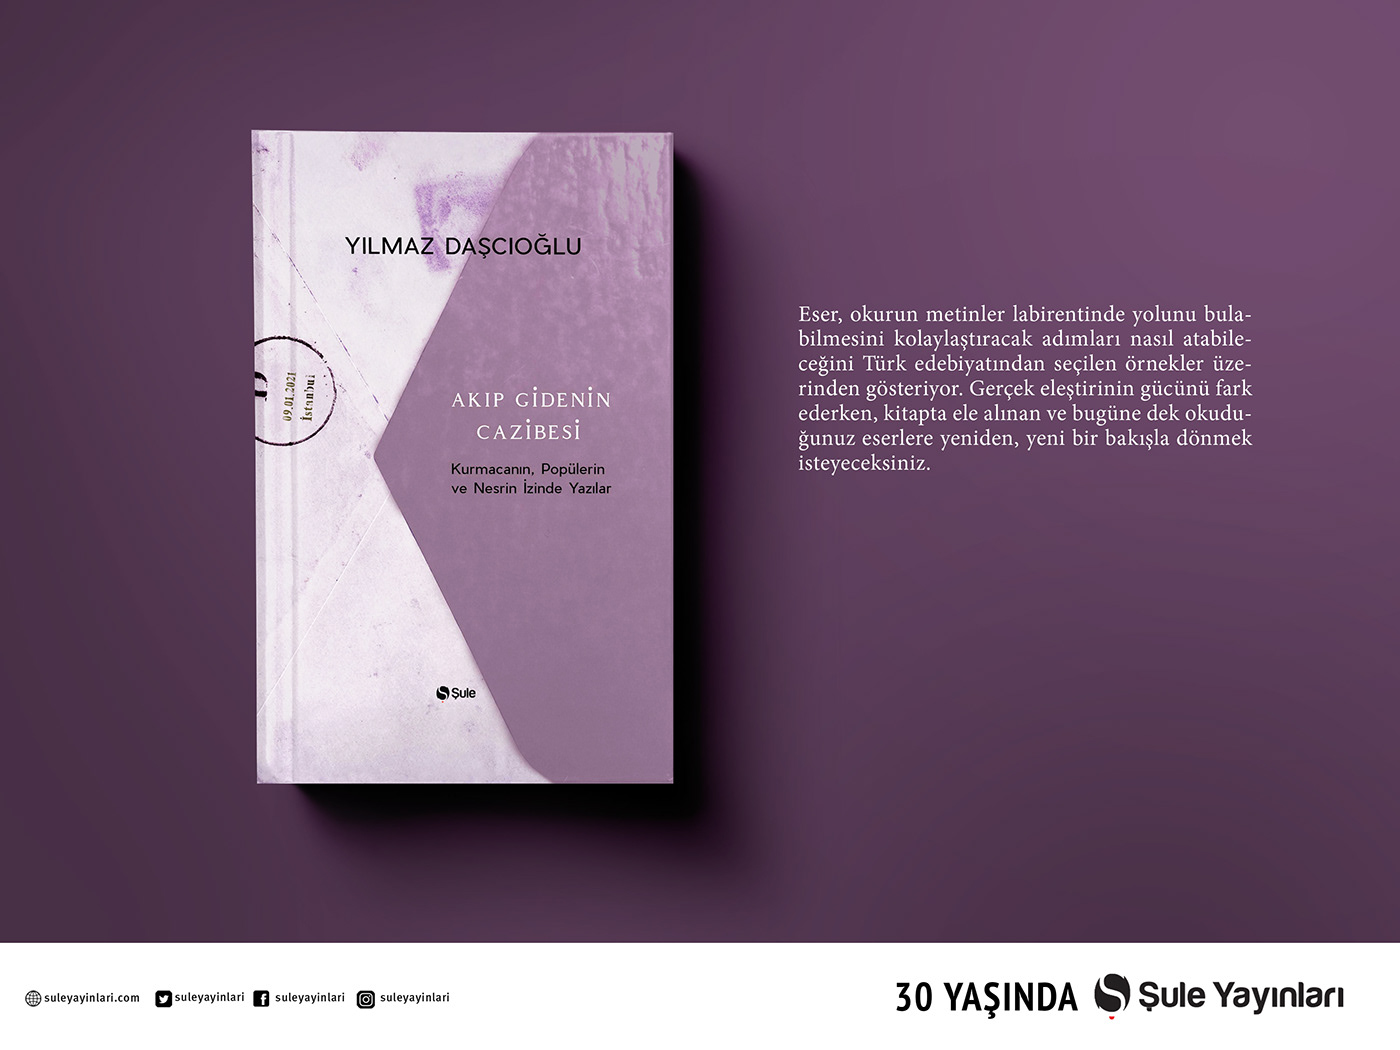 Behance Bookdesign coverbook creatıve edıtorıal ıllustratıon posters publıshınghome socıalmedıa